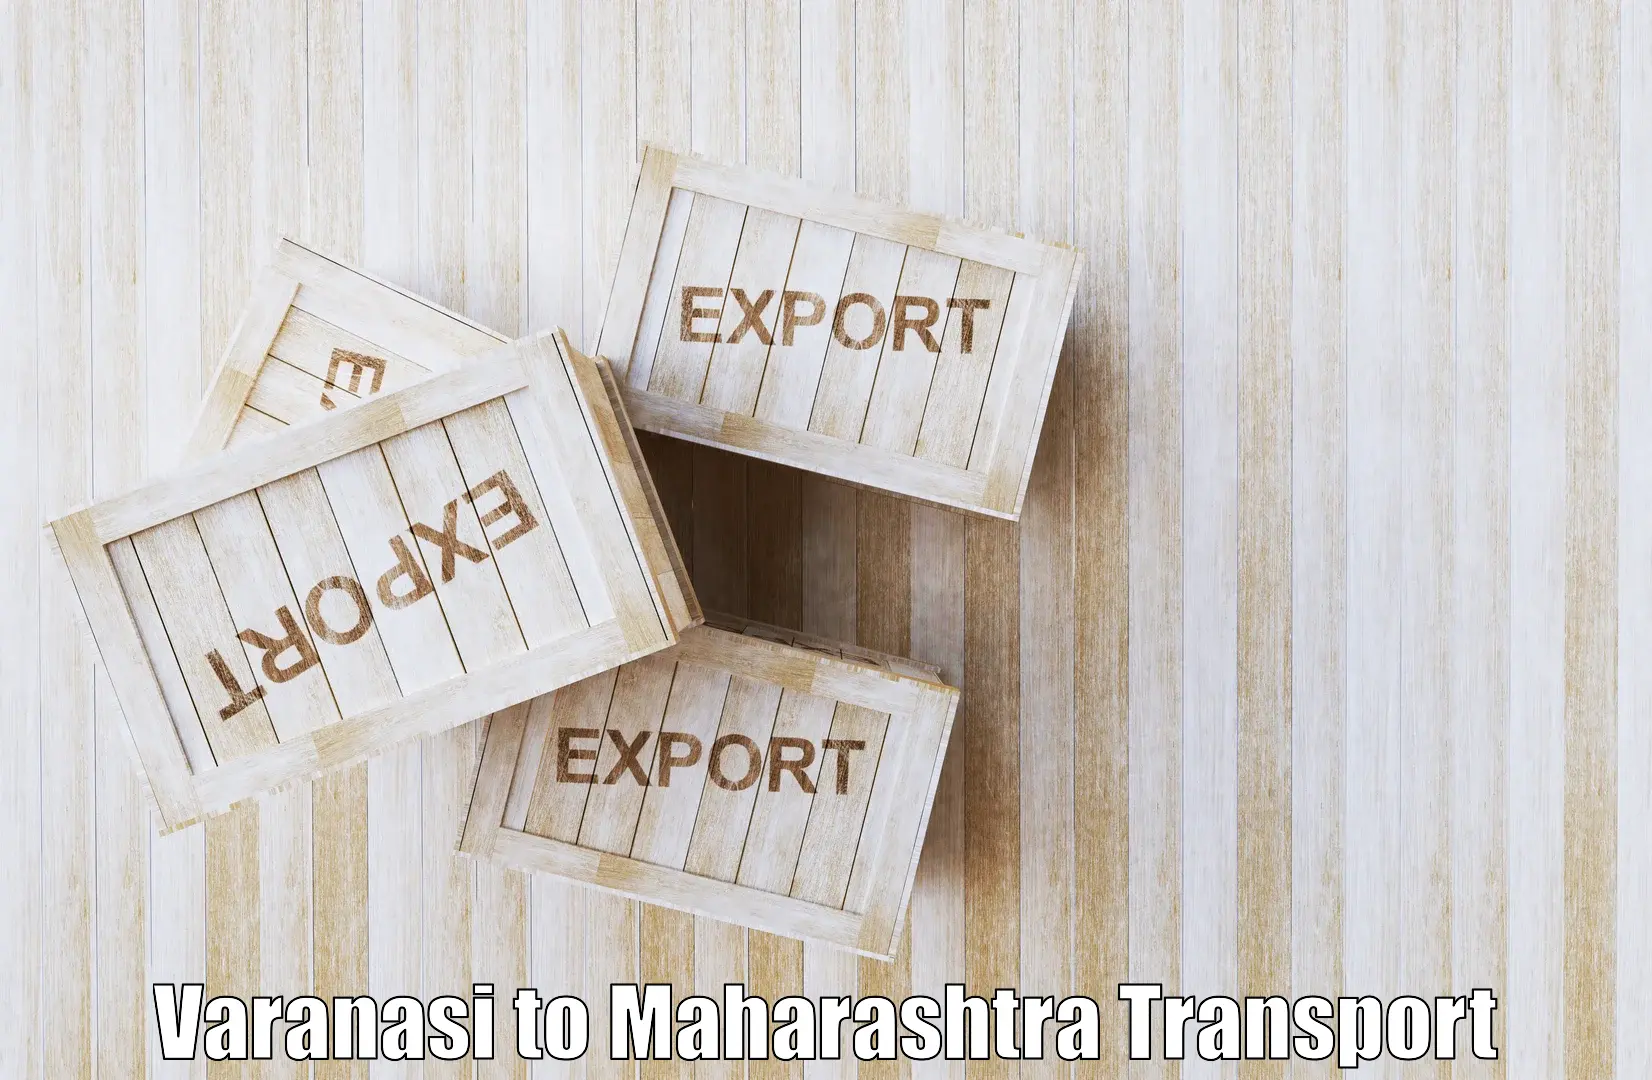 Container transportation services Varanasi to Sinnar